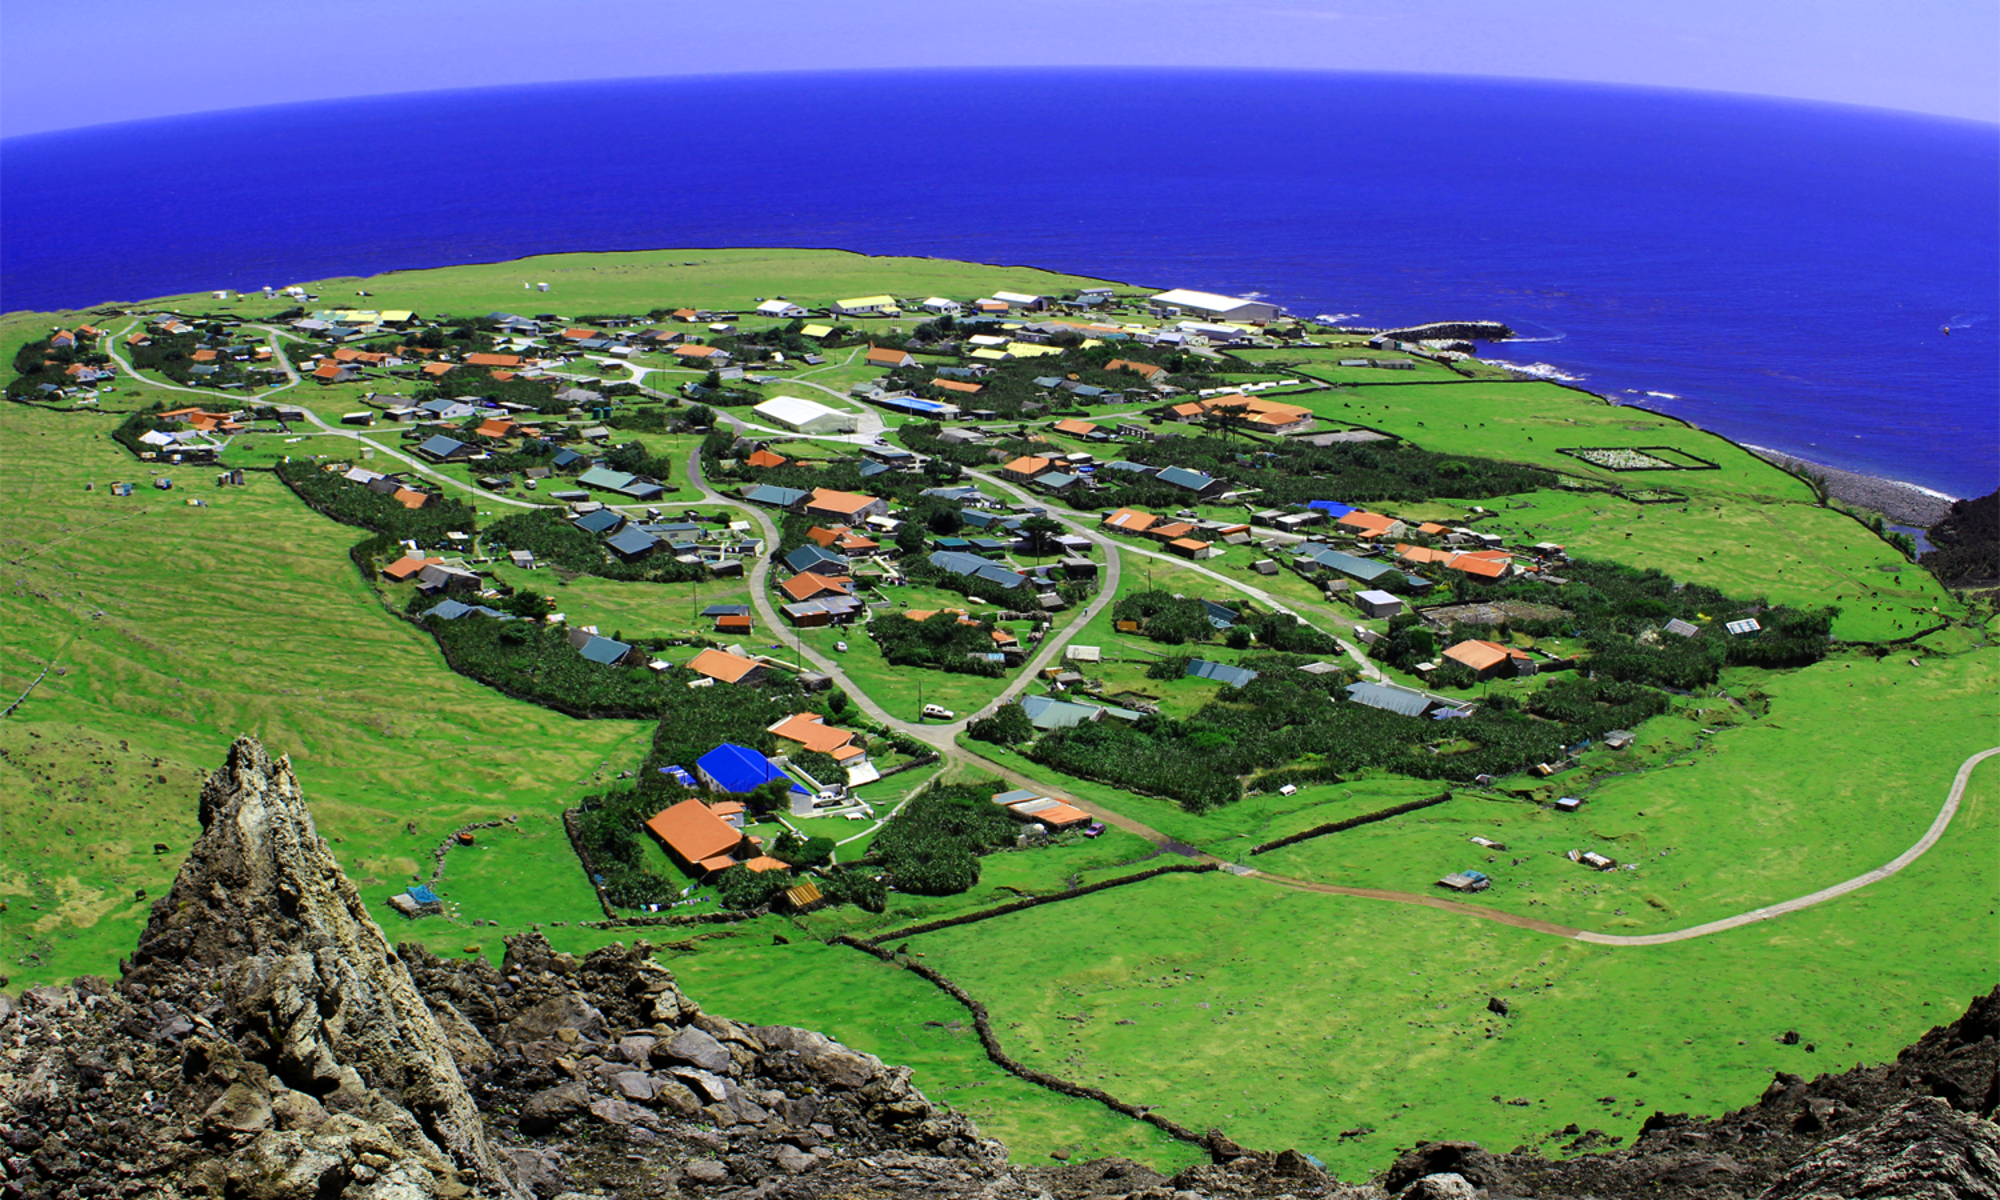 Edinburgh of the Seven Seas, Tristan da Cunha